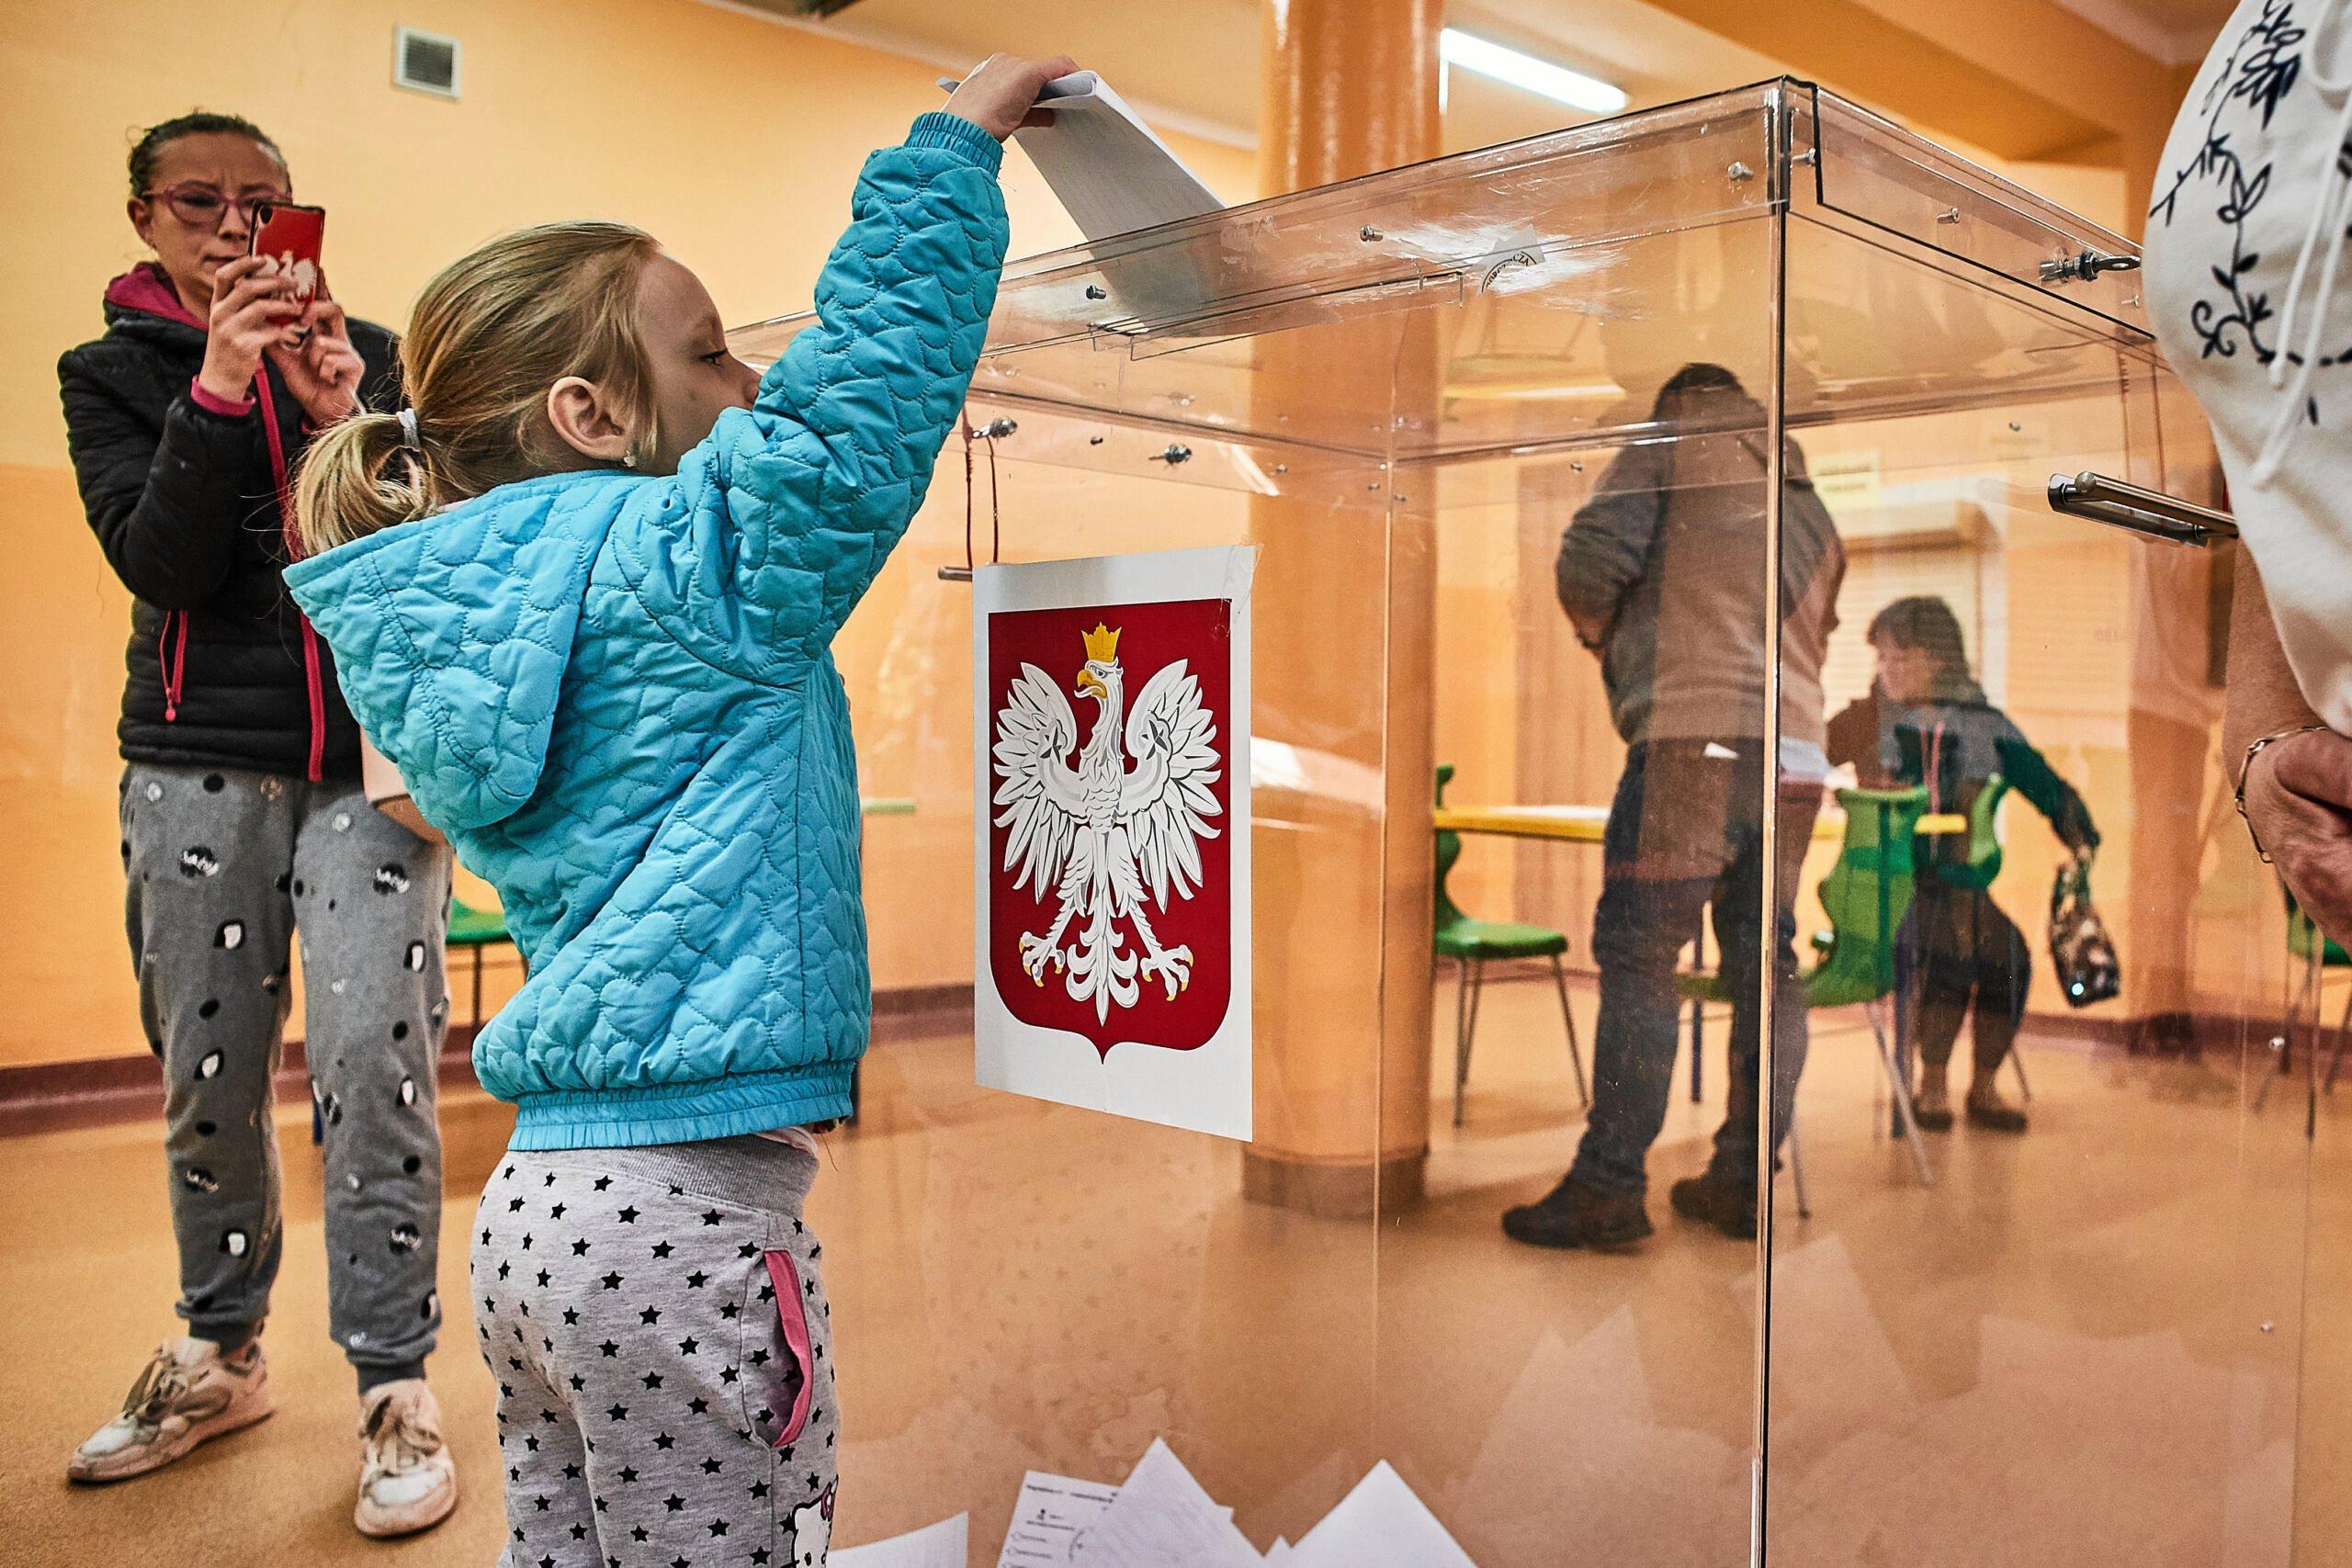 Dziewczynka wspina się na palce, żeby wrzucić głos do urny wyborczej